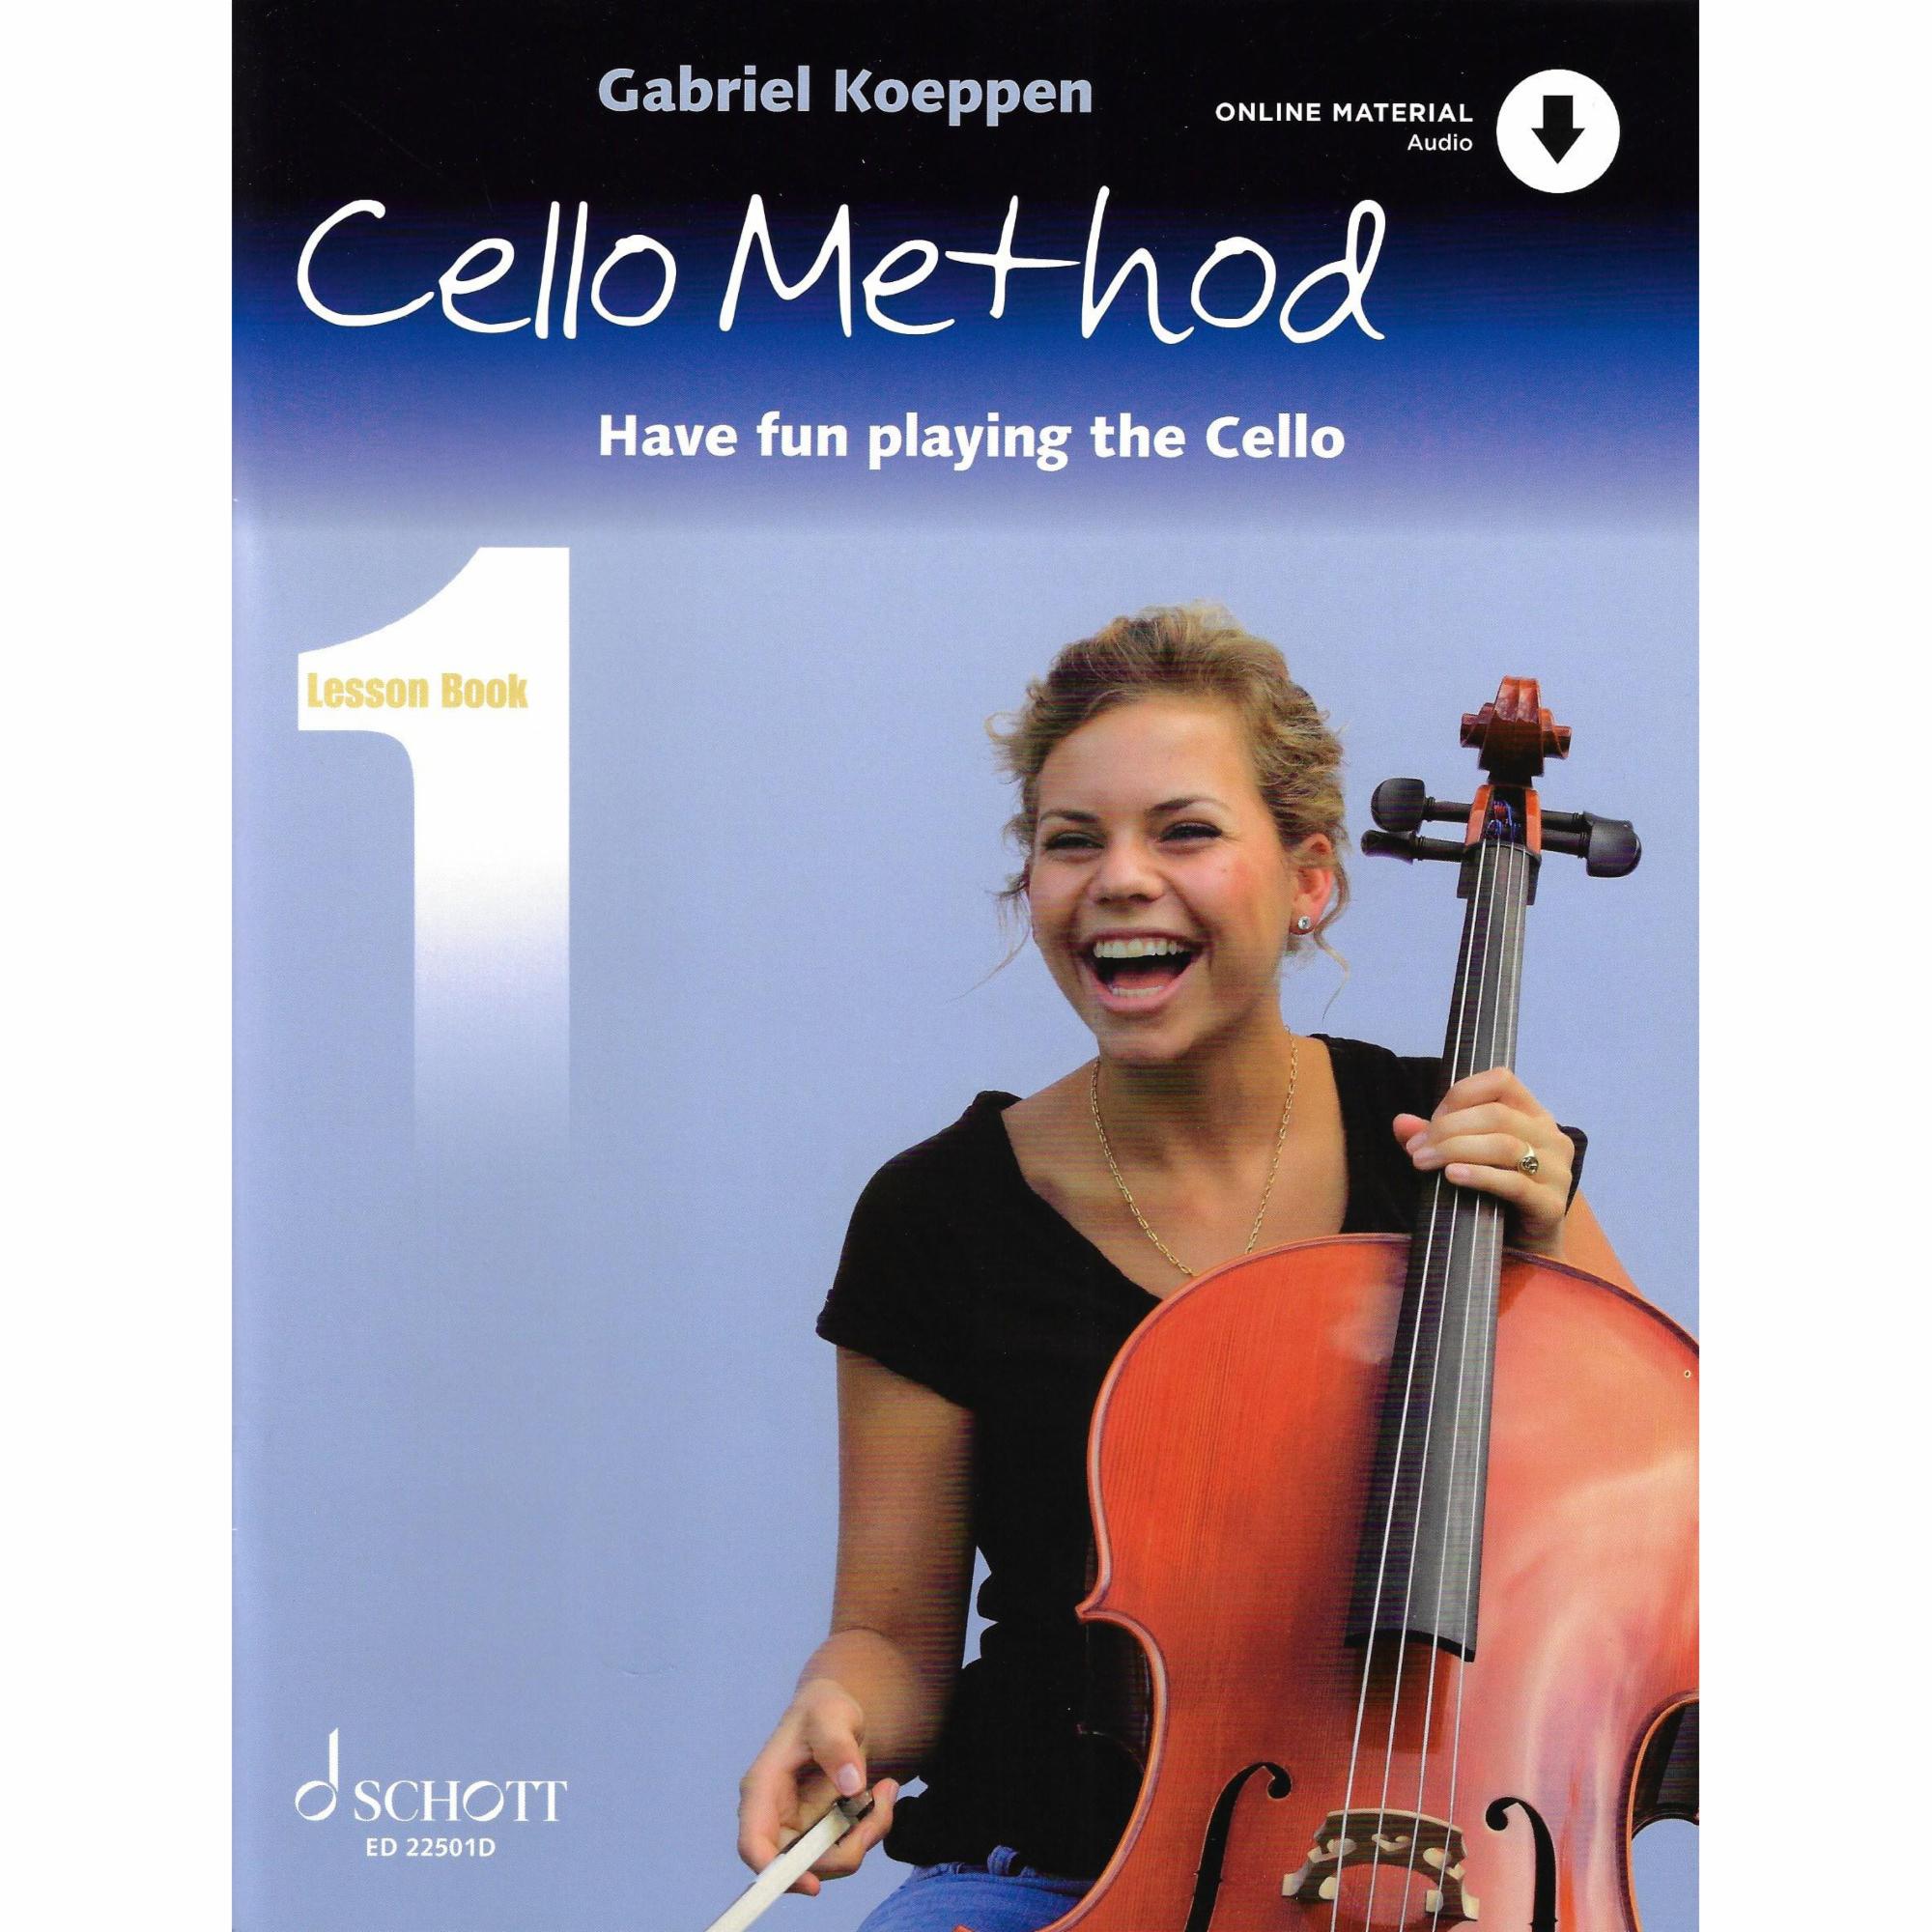 Koeppen -- Cello Method, Lesson Books & Tune Books